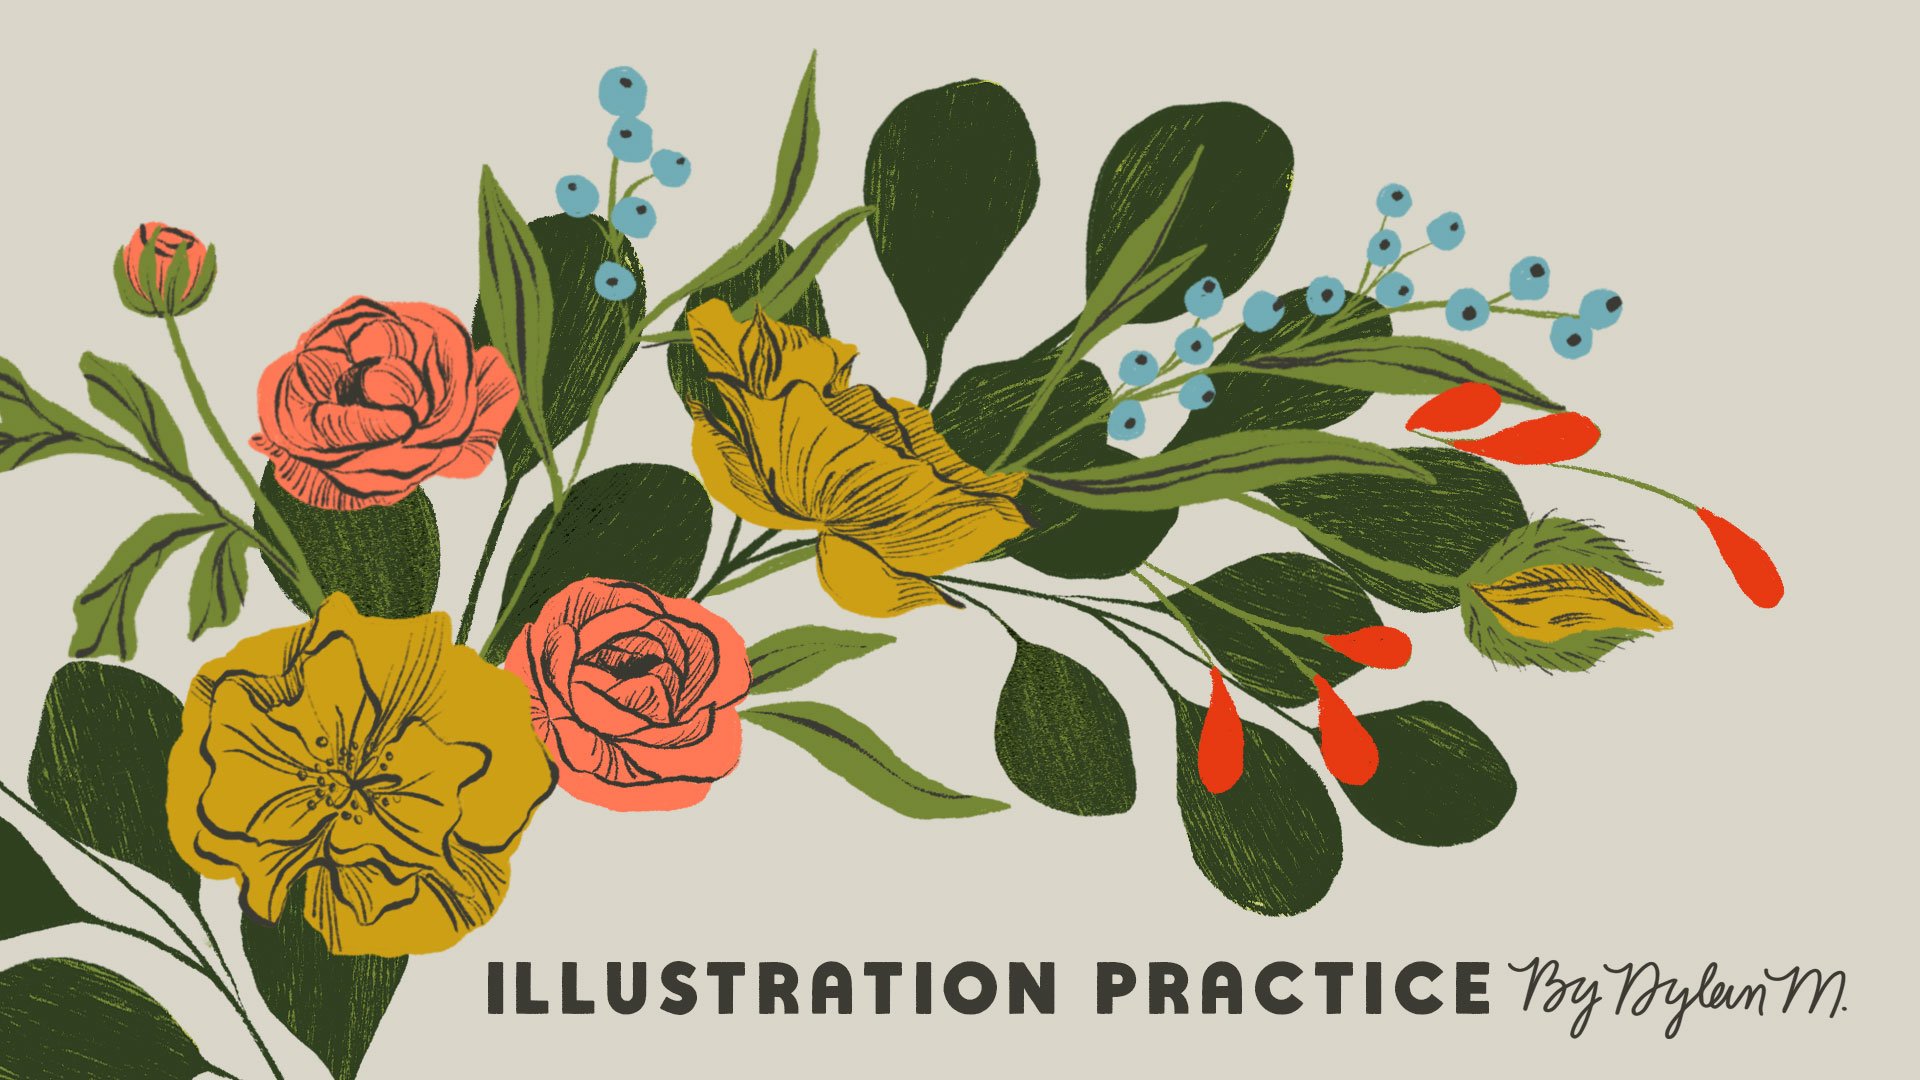 آموزش تمرین تصویرسازی: حروف و گل با Adobe Fresco